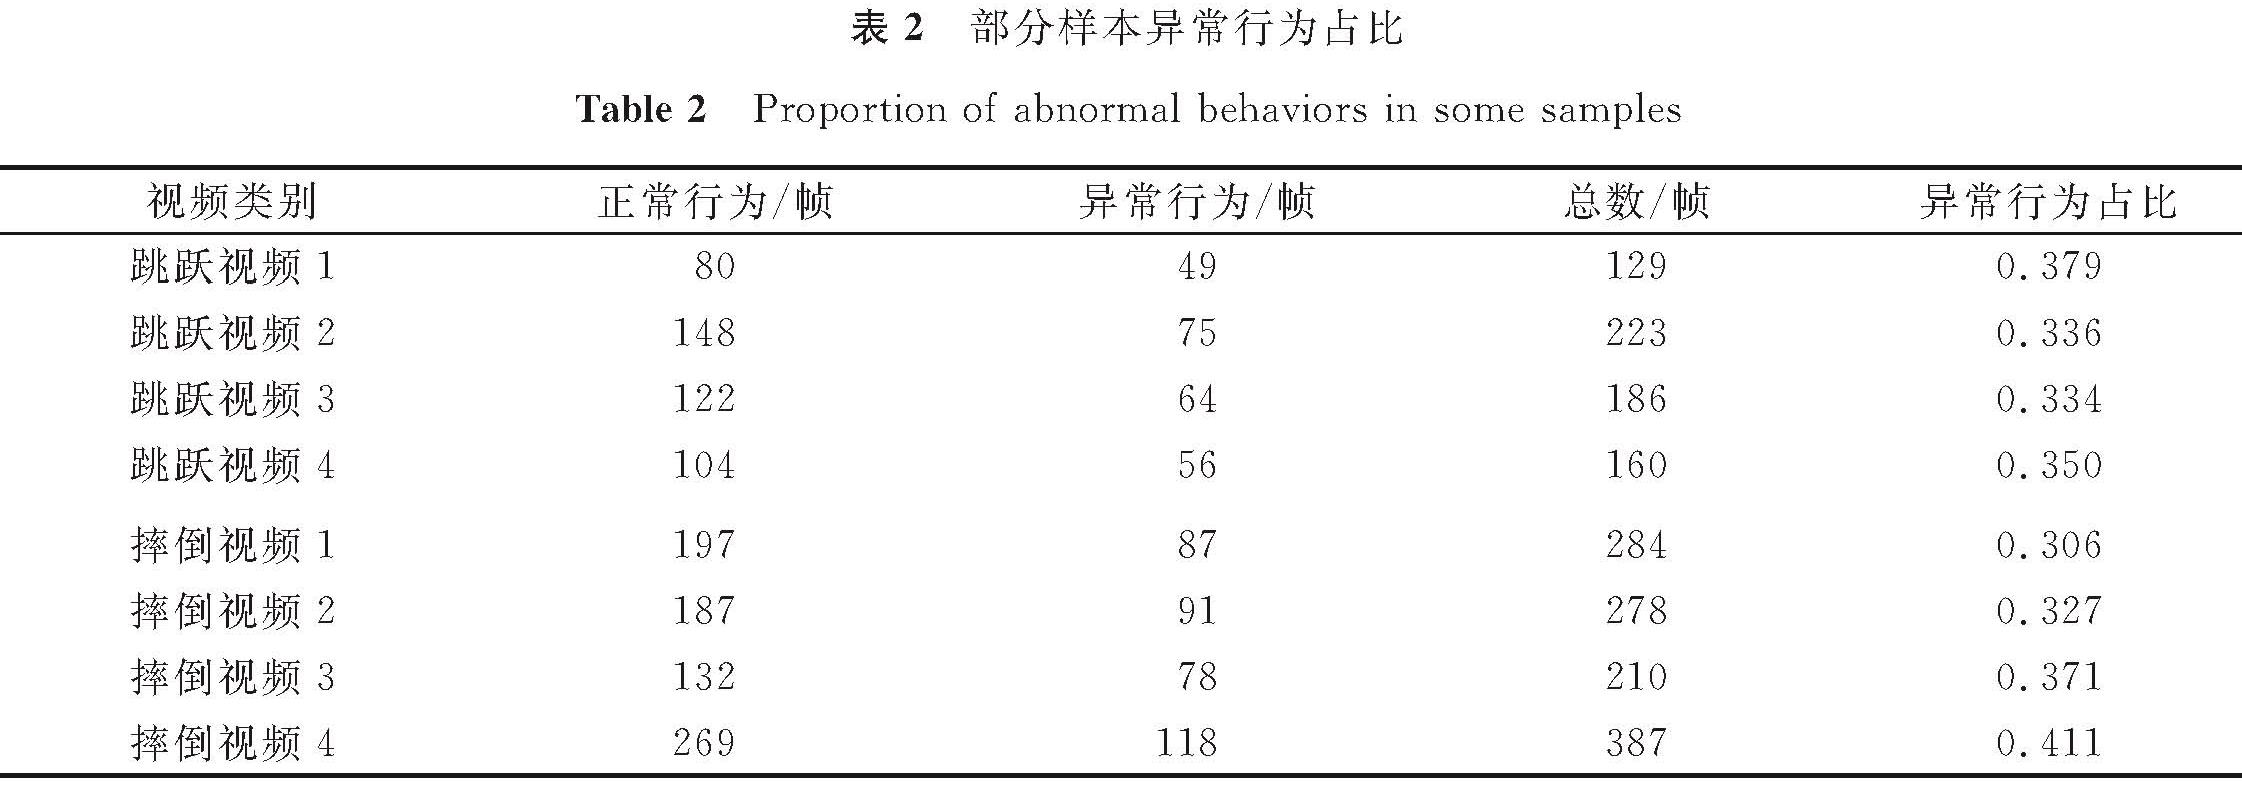 表2 部分样本异常行为占比<br/>Table 2 Proportion of abnormal behaviors in some samples